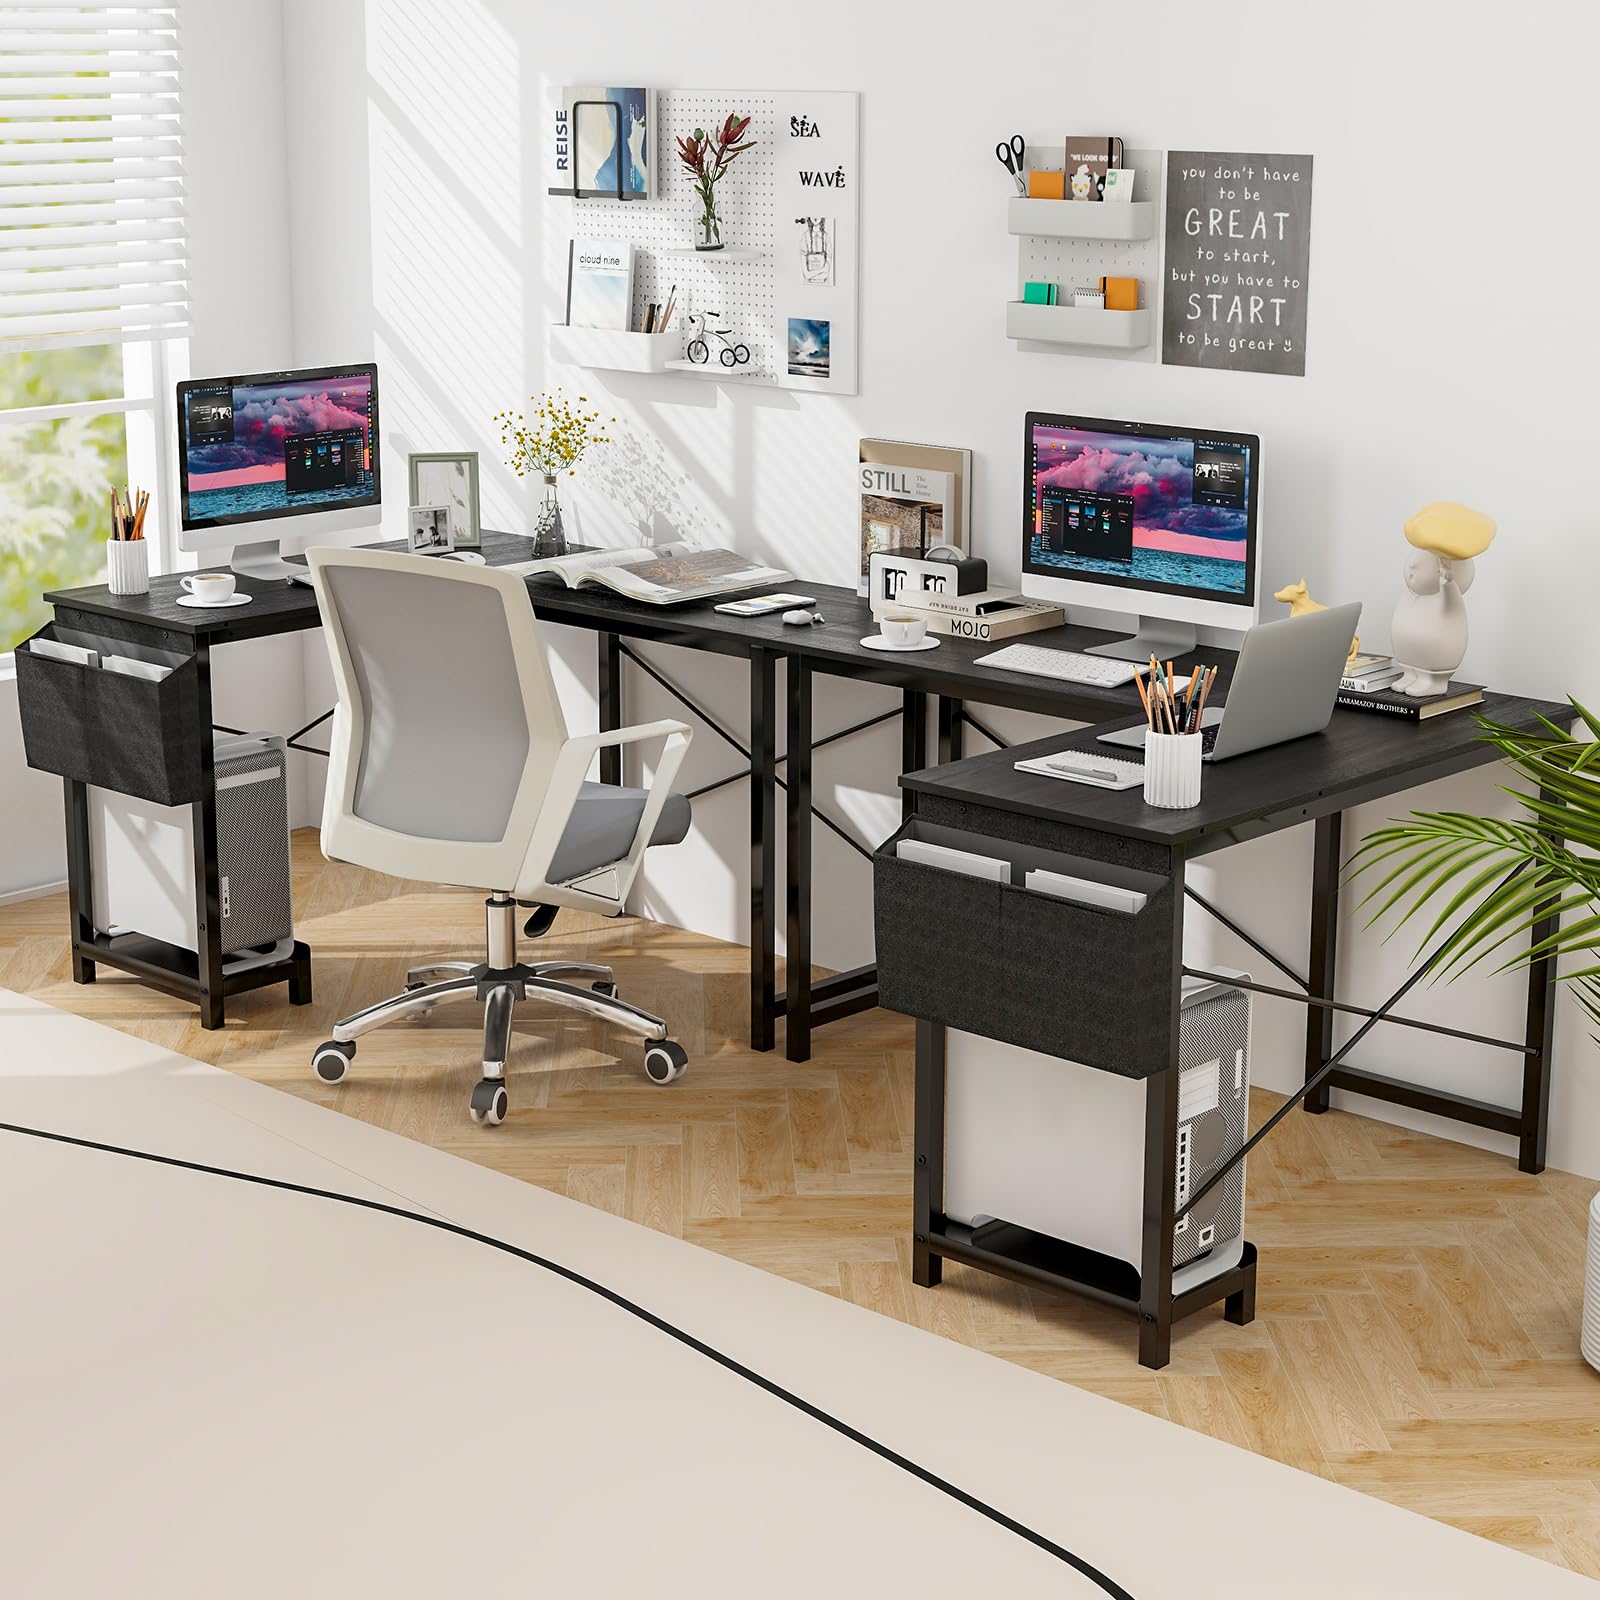 Giantex L-Shaped Computer Desk